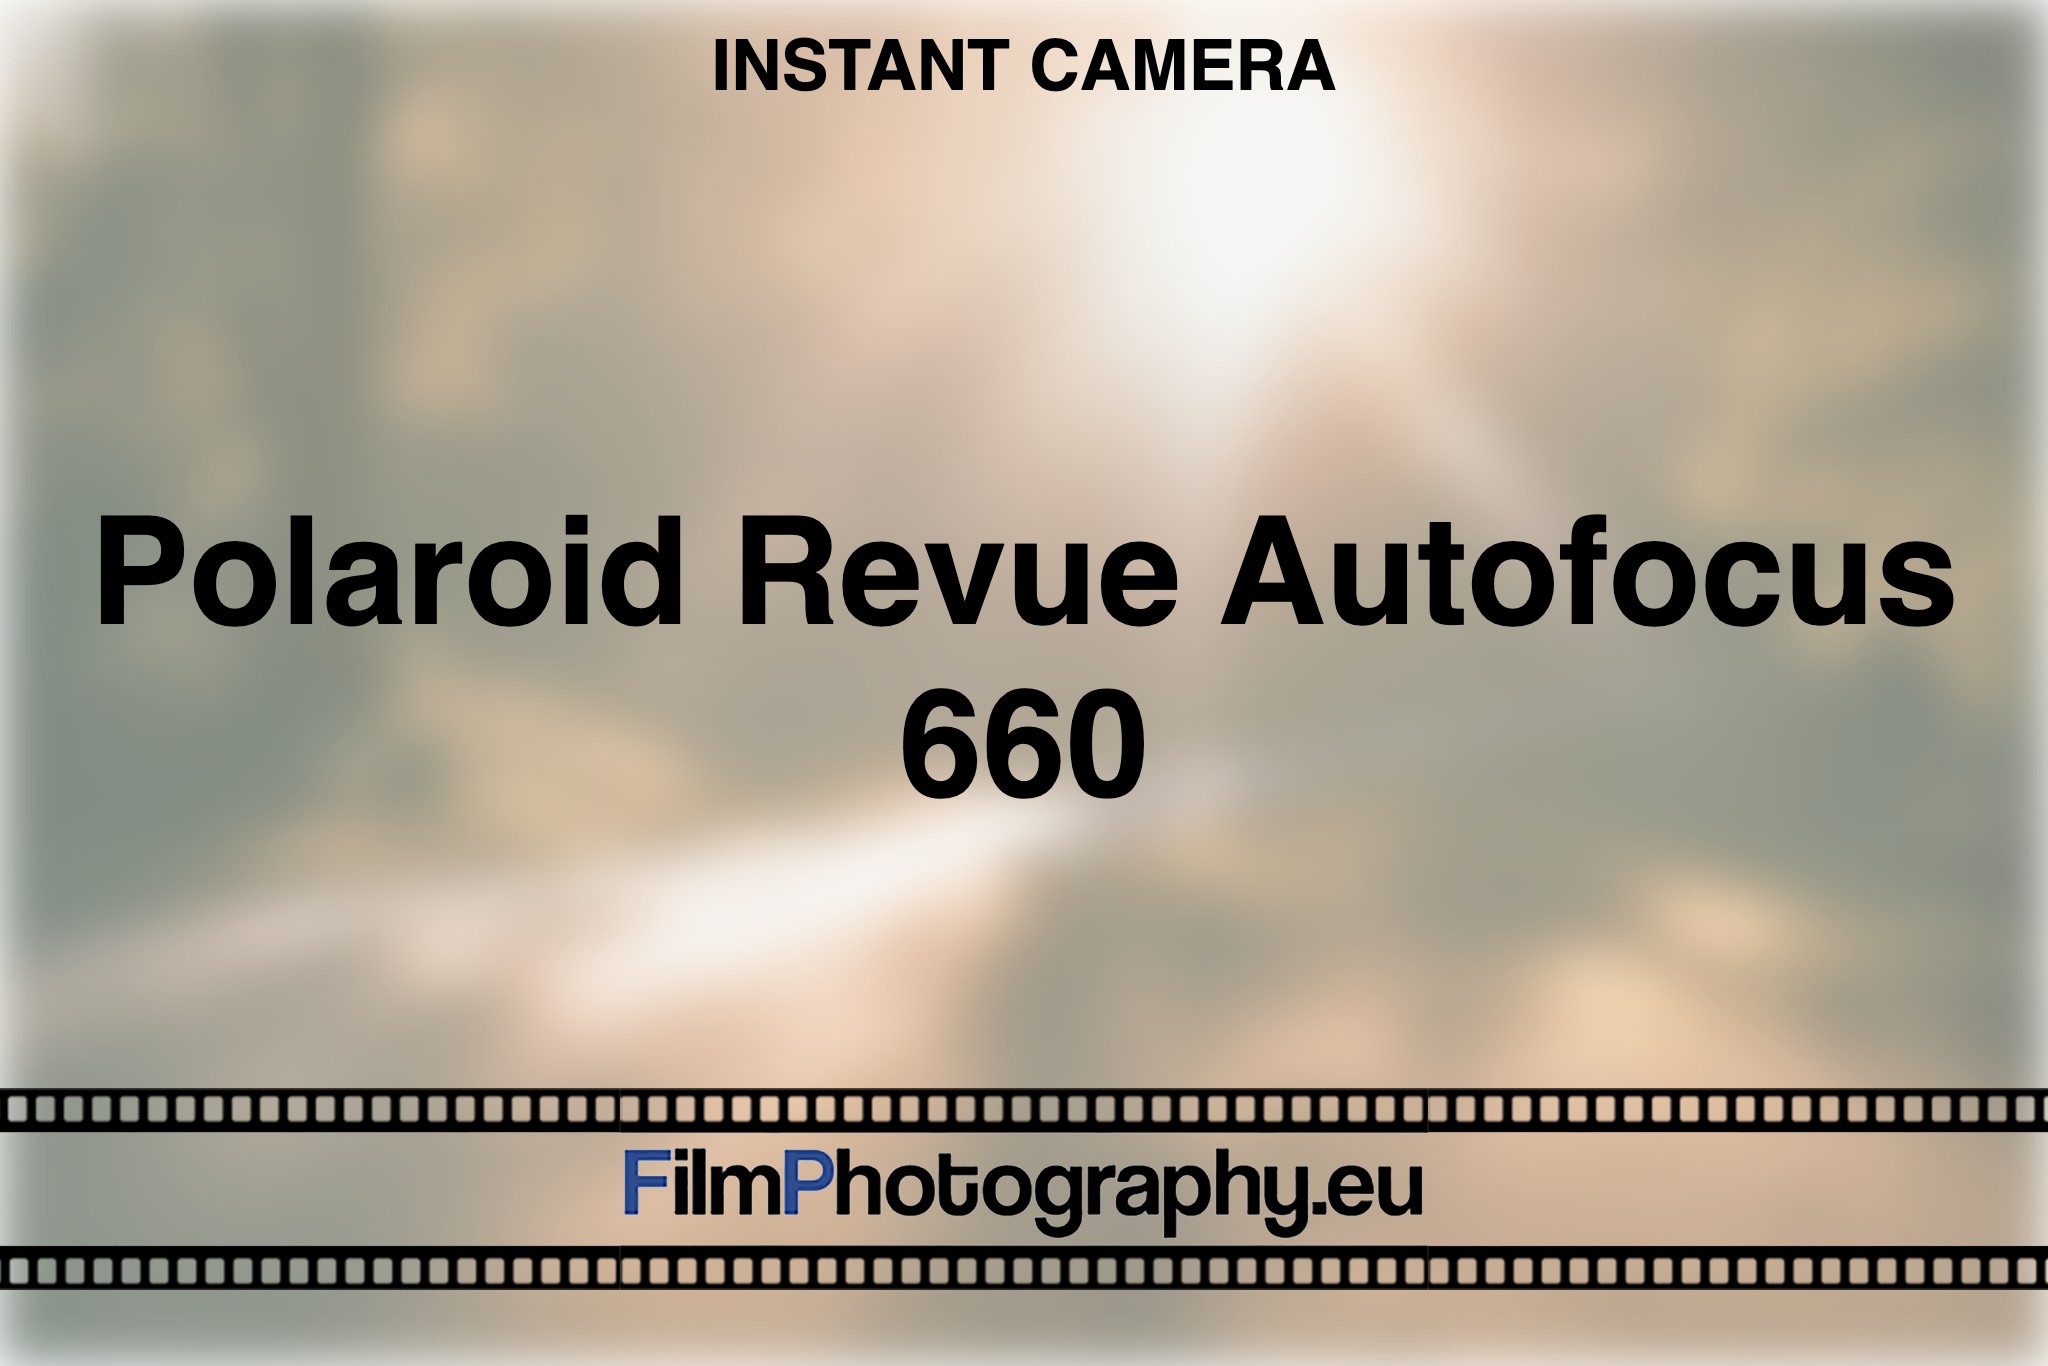 polaroid-revue-autofocus-660-instant-camera-bnv